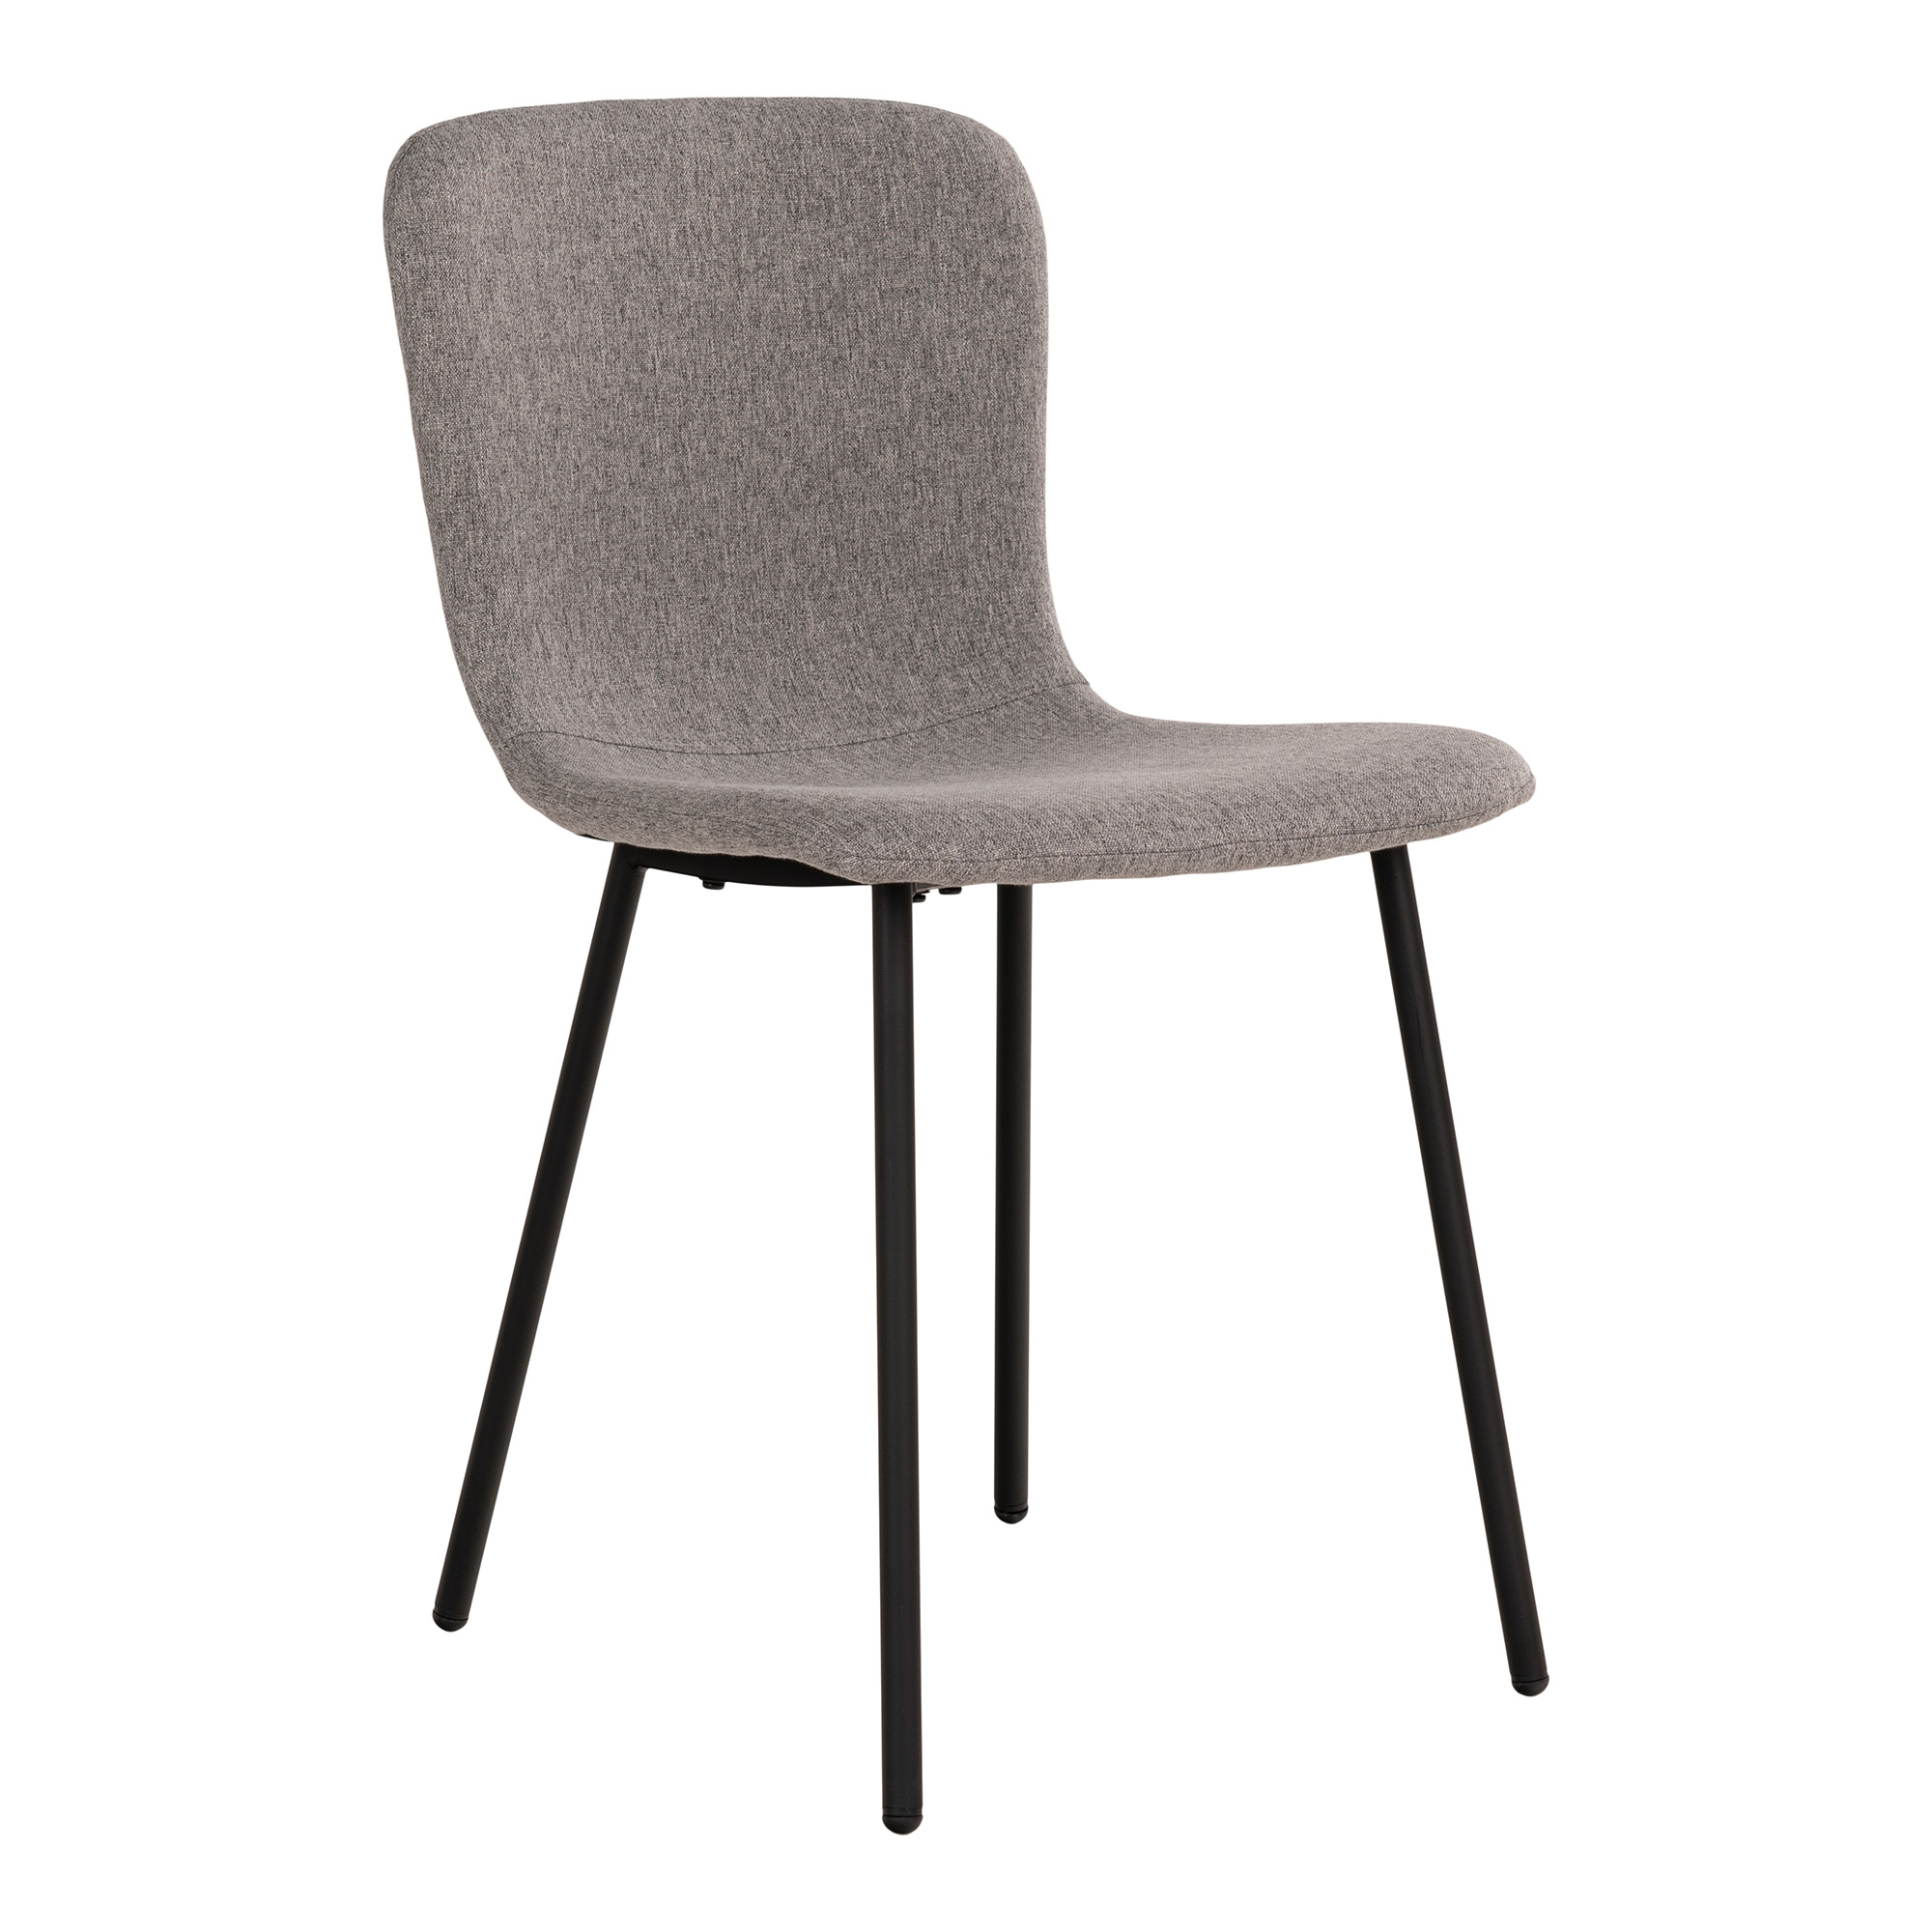 HOUSE NORDIC Halden spisebordsstol - lysegrå polyester stof og sort metal